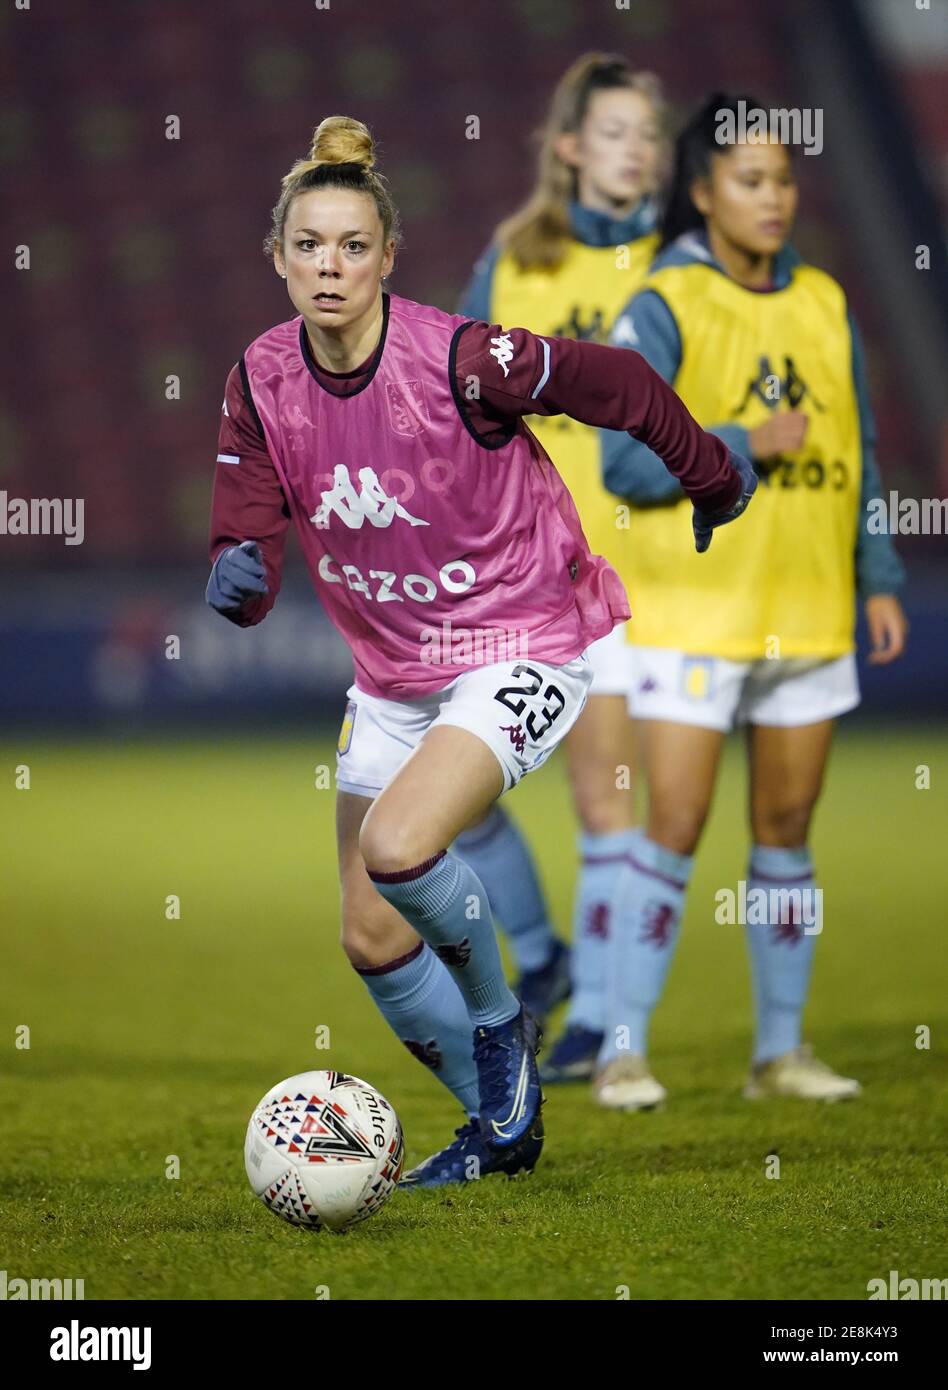 Nadine Hanssen von Aston Villa erwärmt sich vor dem FA Women's Super League Spiel im Banks's Stadium, Walsall. Bilddatum: Mittwoch, 27. Januar 2021. Stockfoto